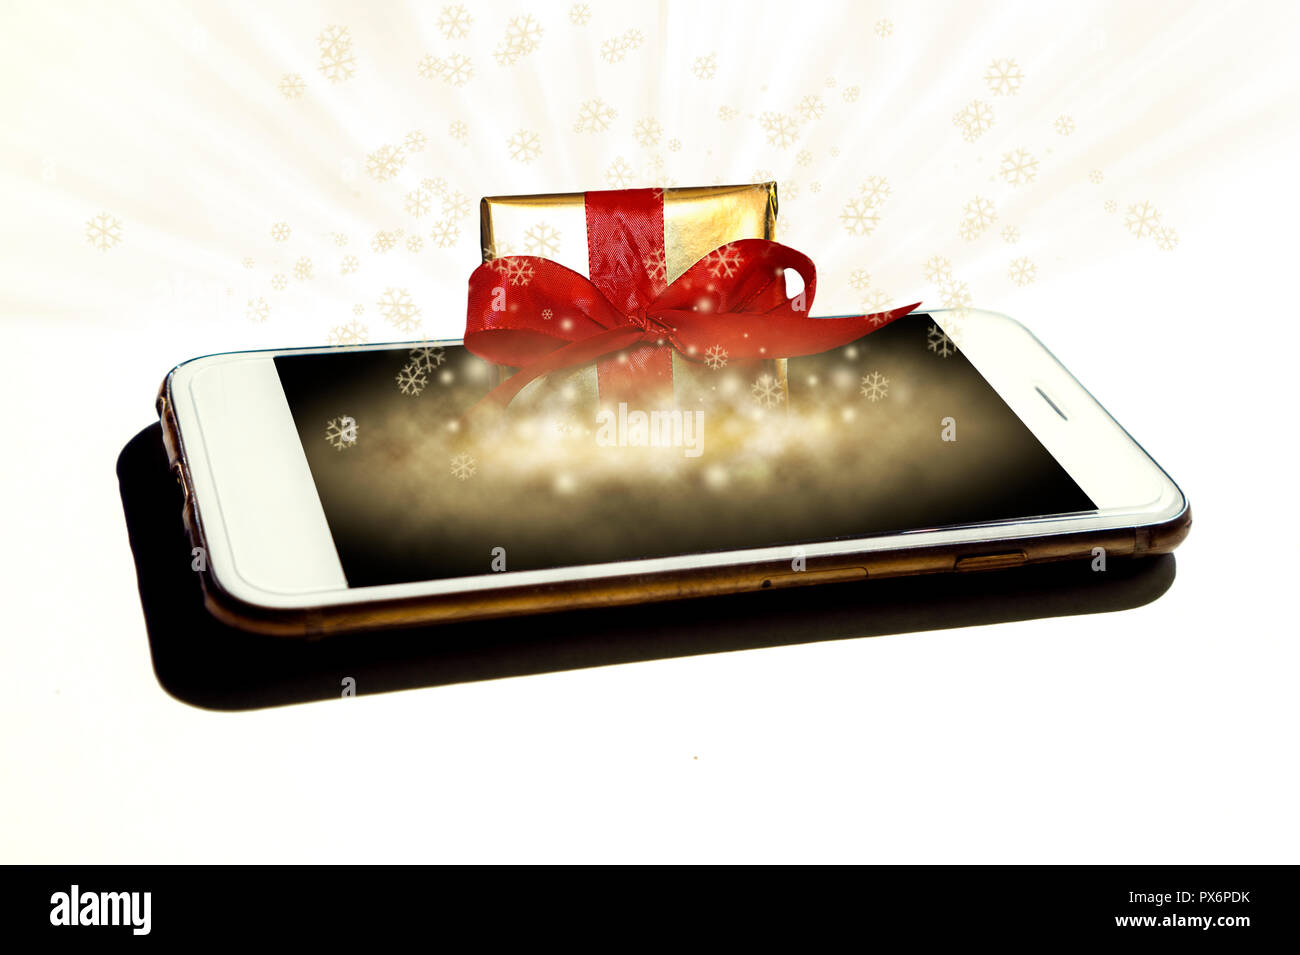 L'or présent fort magiquement en sortant du smartphone isolés - Concept de l'e-commerce les ventes, achats en ligne, digital marketing au moment de Noël Banque D'Images